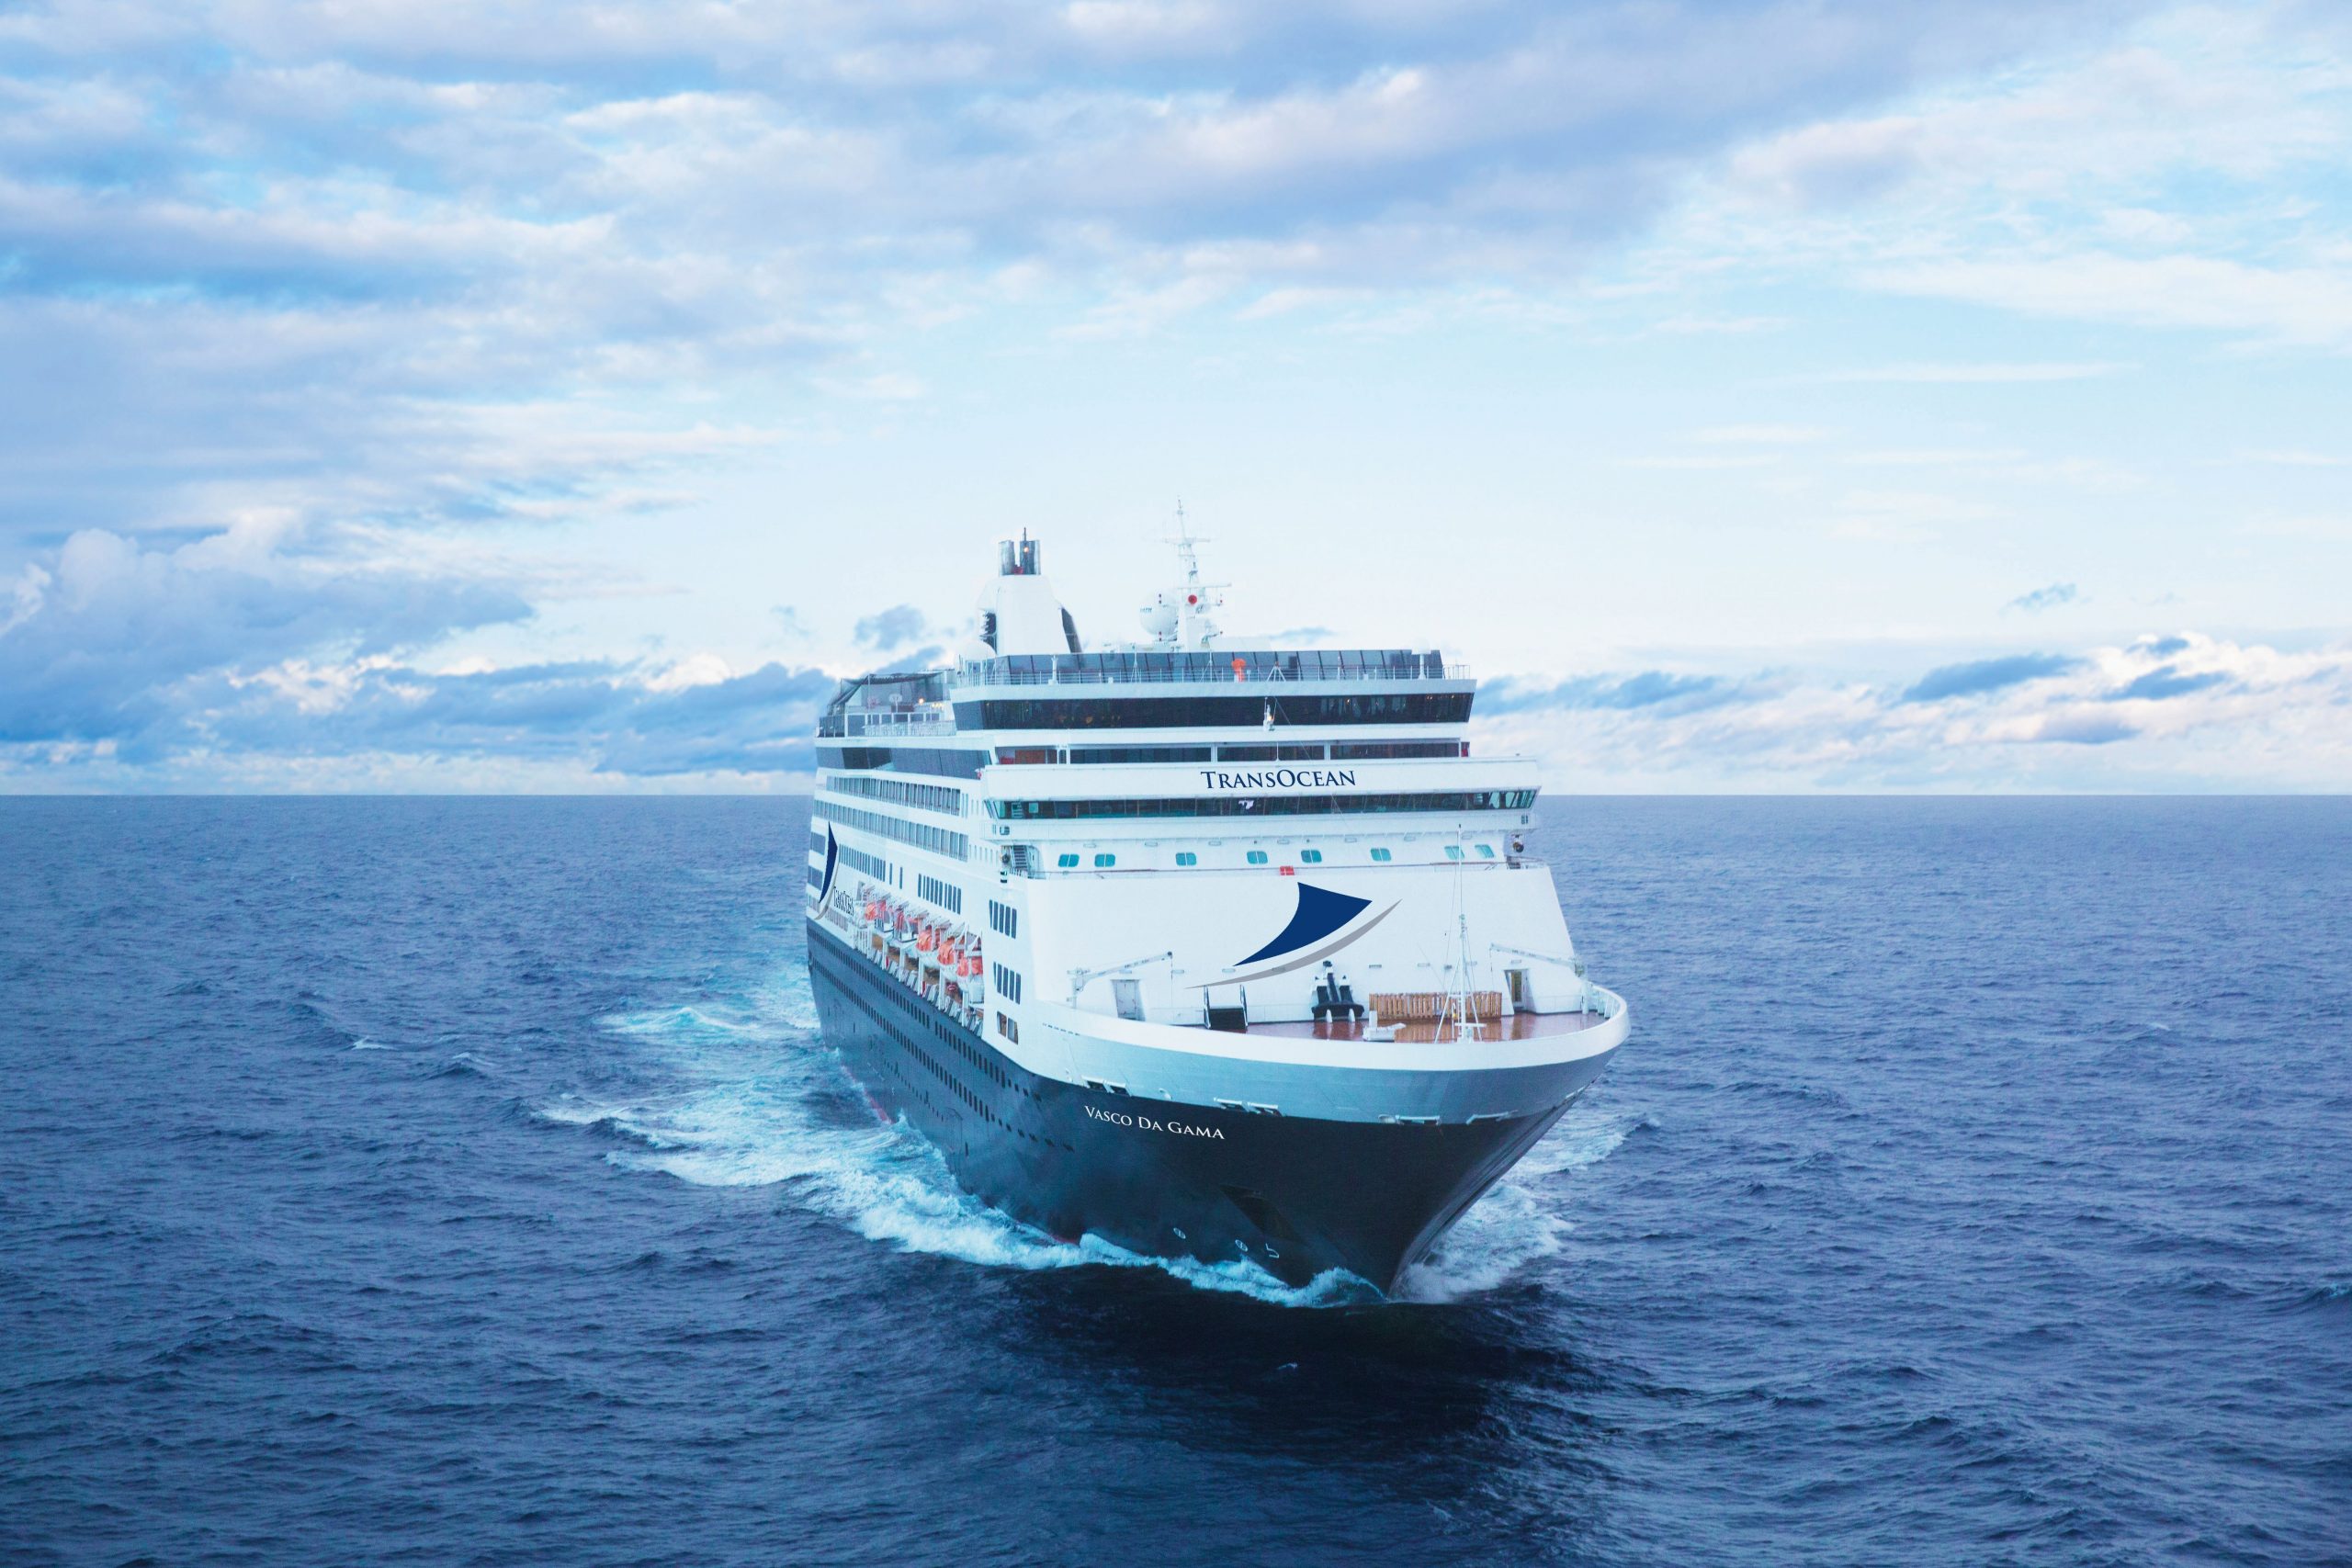 Die„Vasco da Gama“ ist für 9,5 Millionen Euro von Mystic Invest aus der Konkursmasse von CMV ersteigert worden und geht wohl an nicko cruises